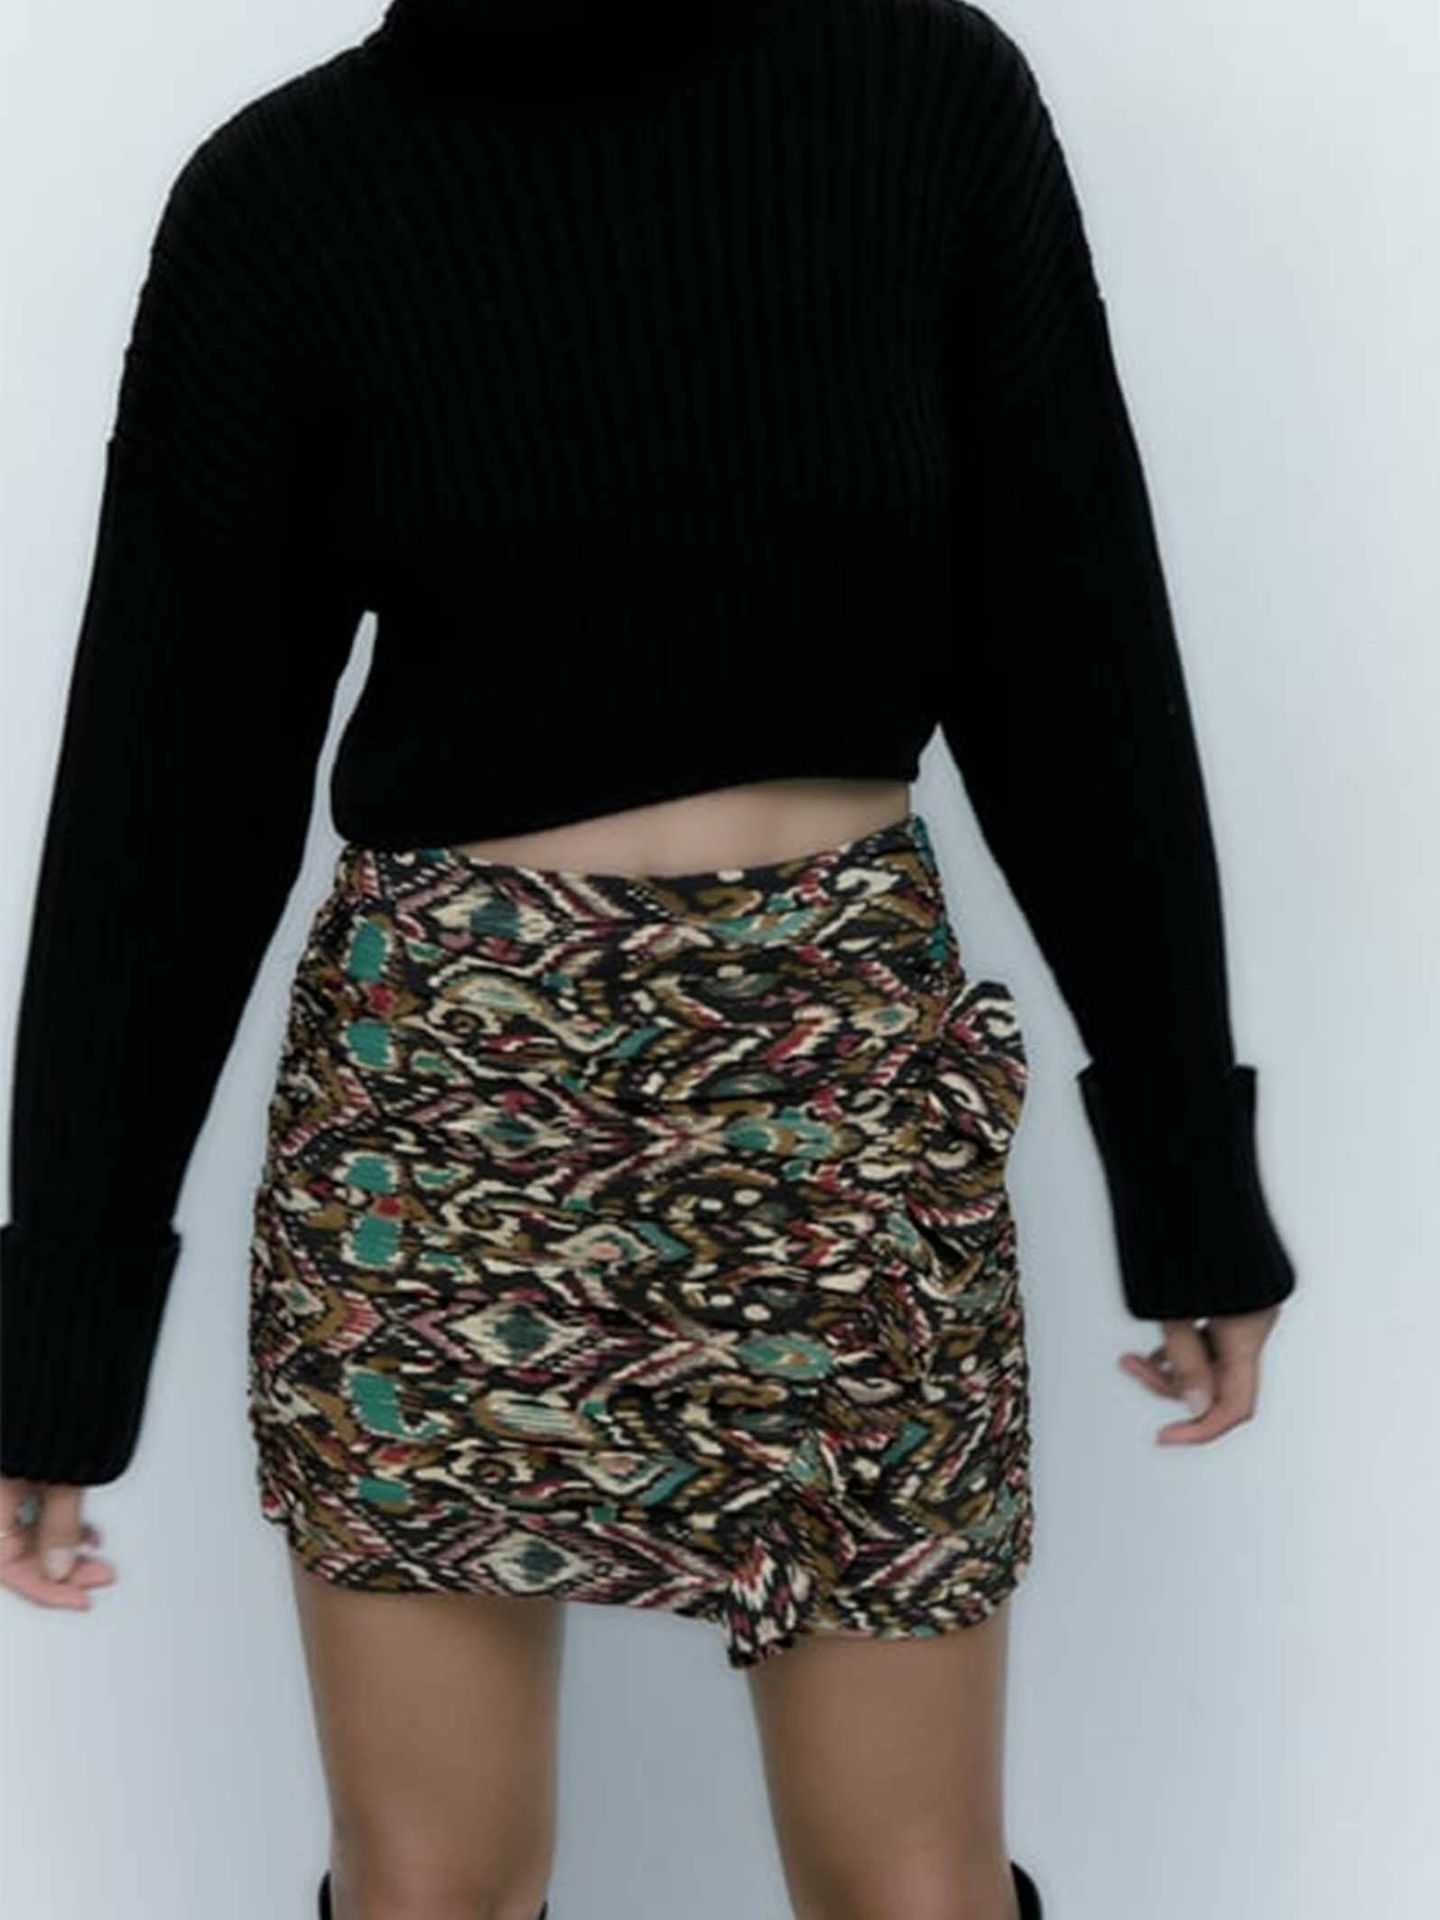 La nueva falda de Zara ideal para combinar con botines. (Cortesía)